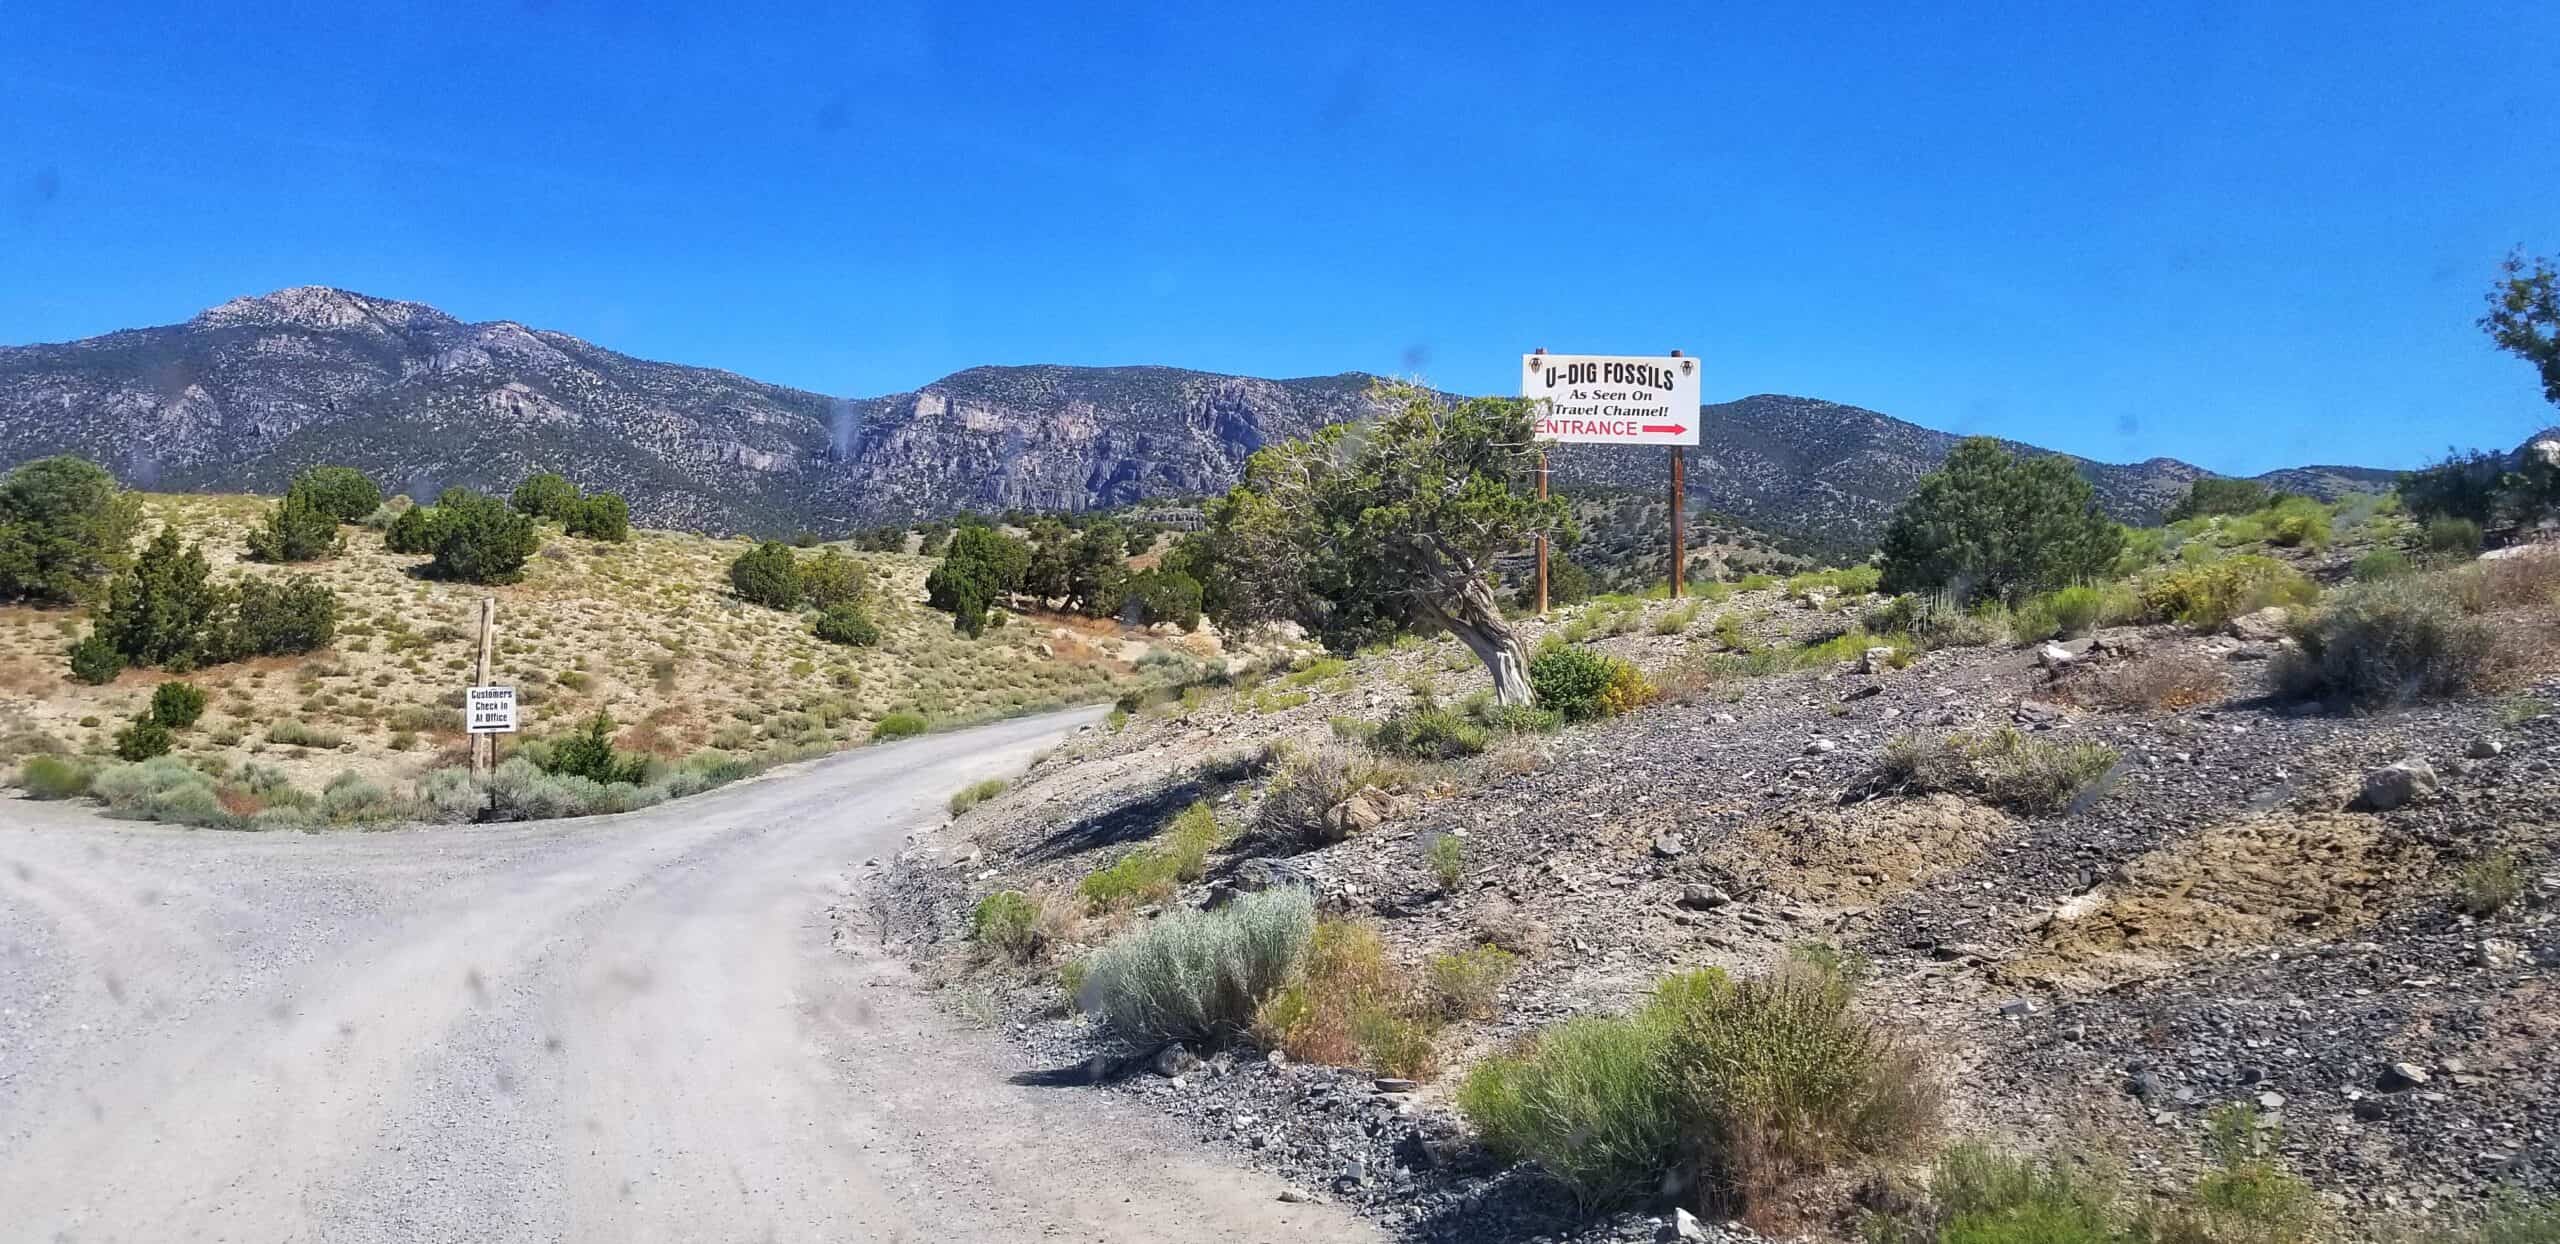 U Dig Trilobite Quarry split road sign